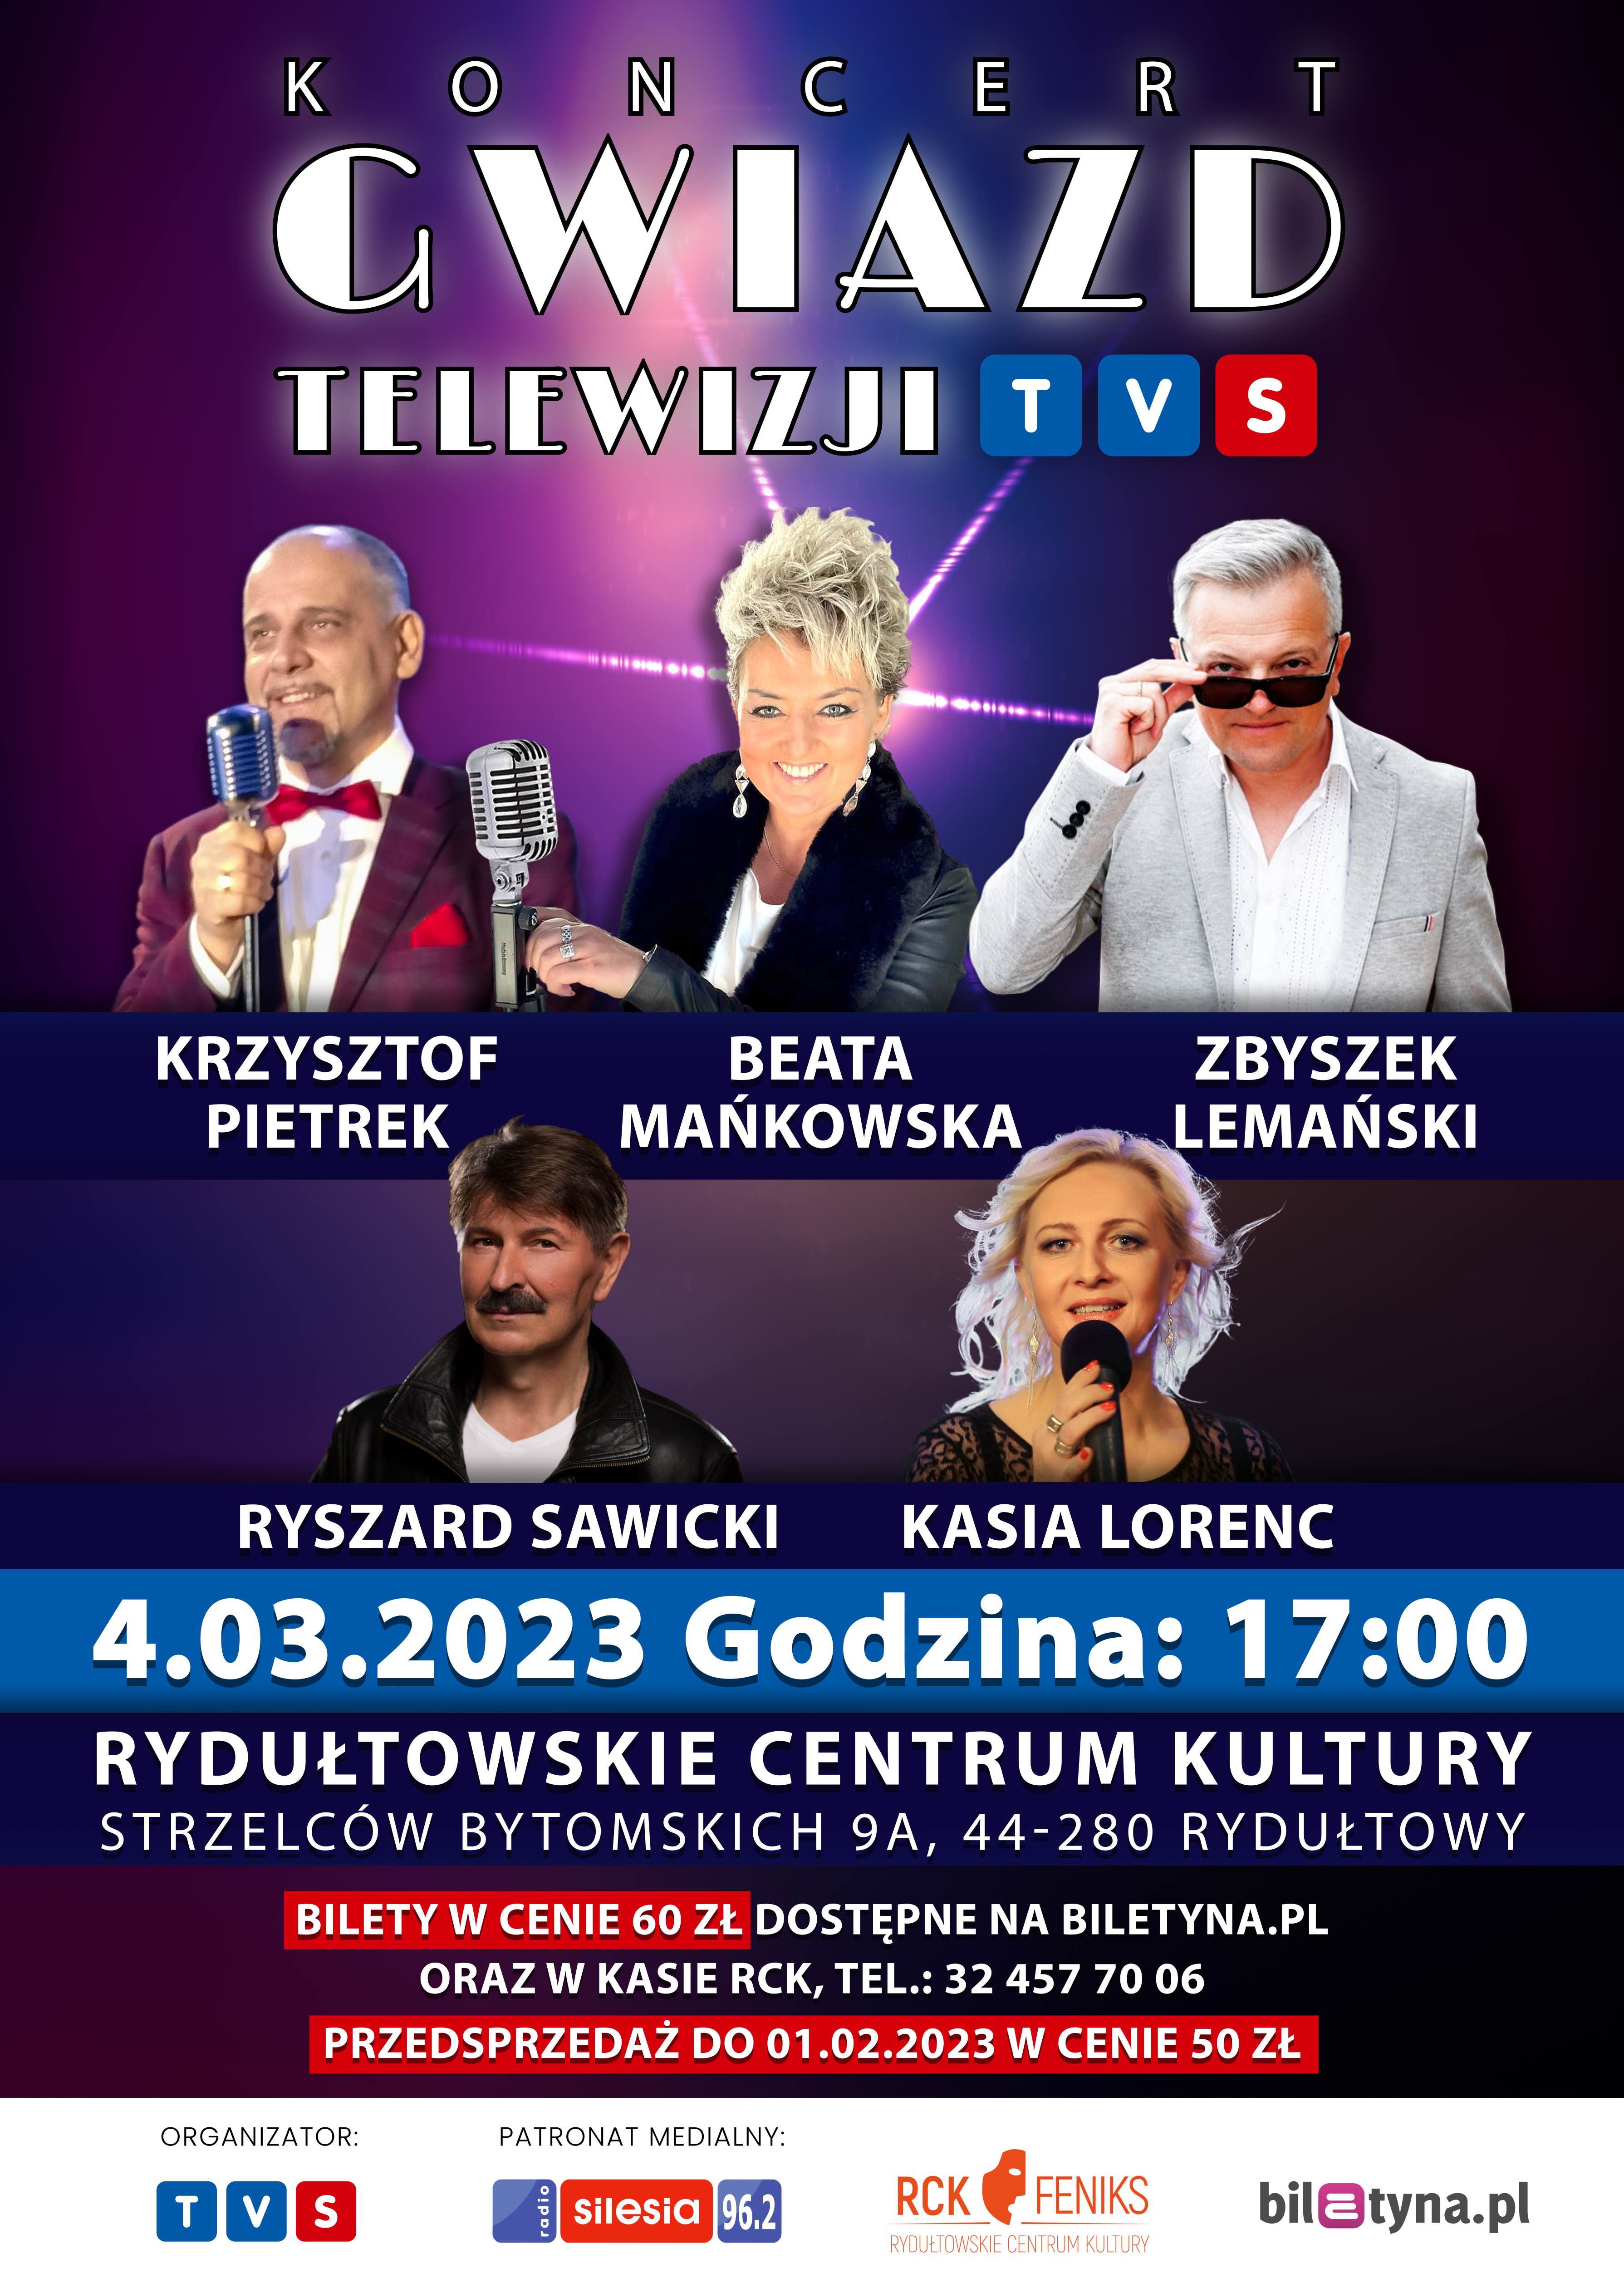 Plakat Koncert Gwiazd Telewizji TVS 135650